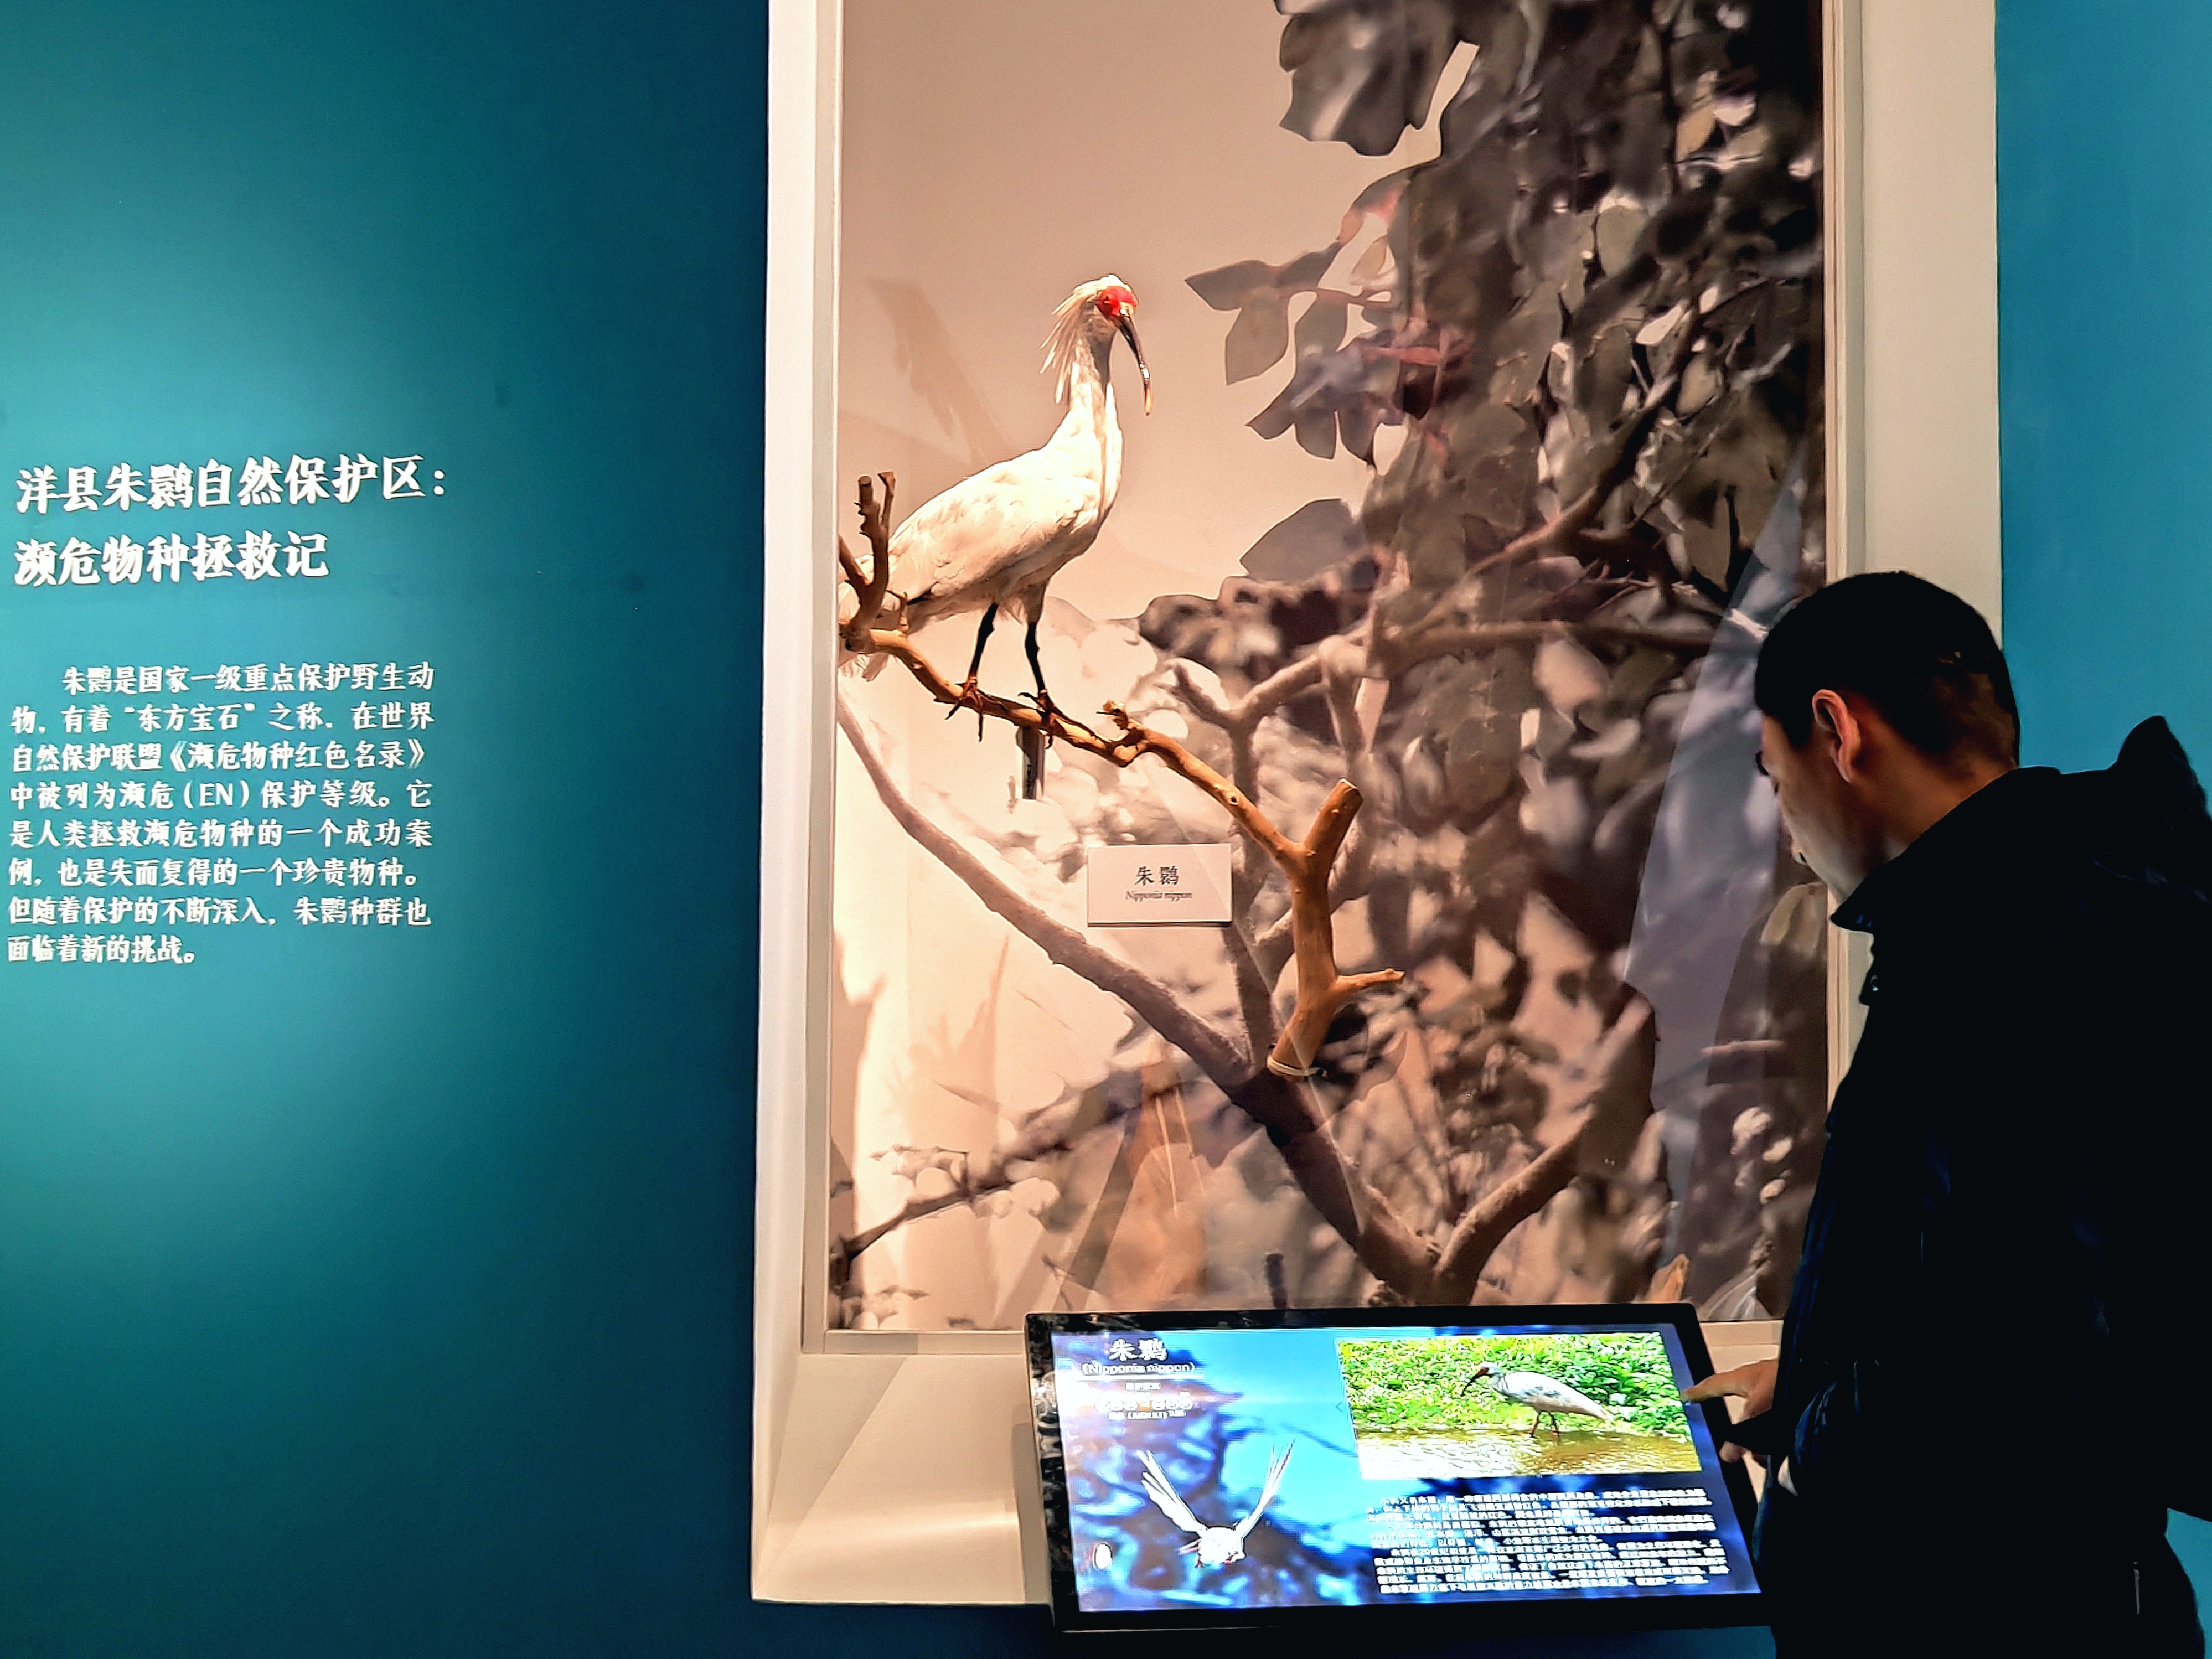 “共同家园——大自然的奇迹”展览在中国国家博物馆正式对外展出